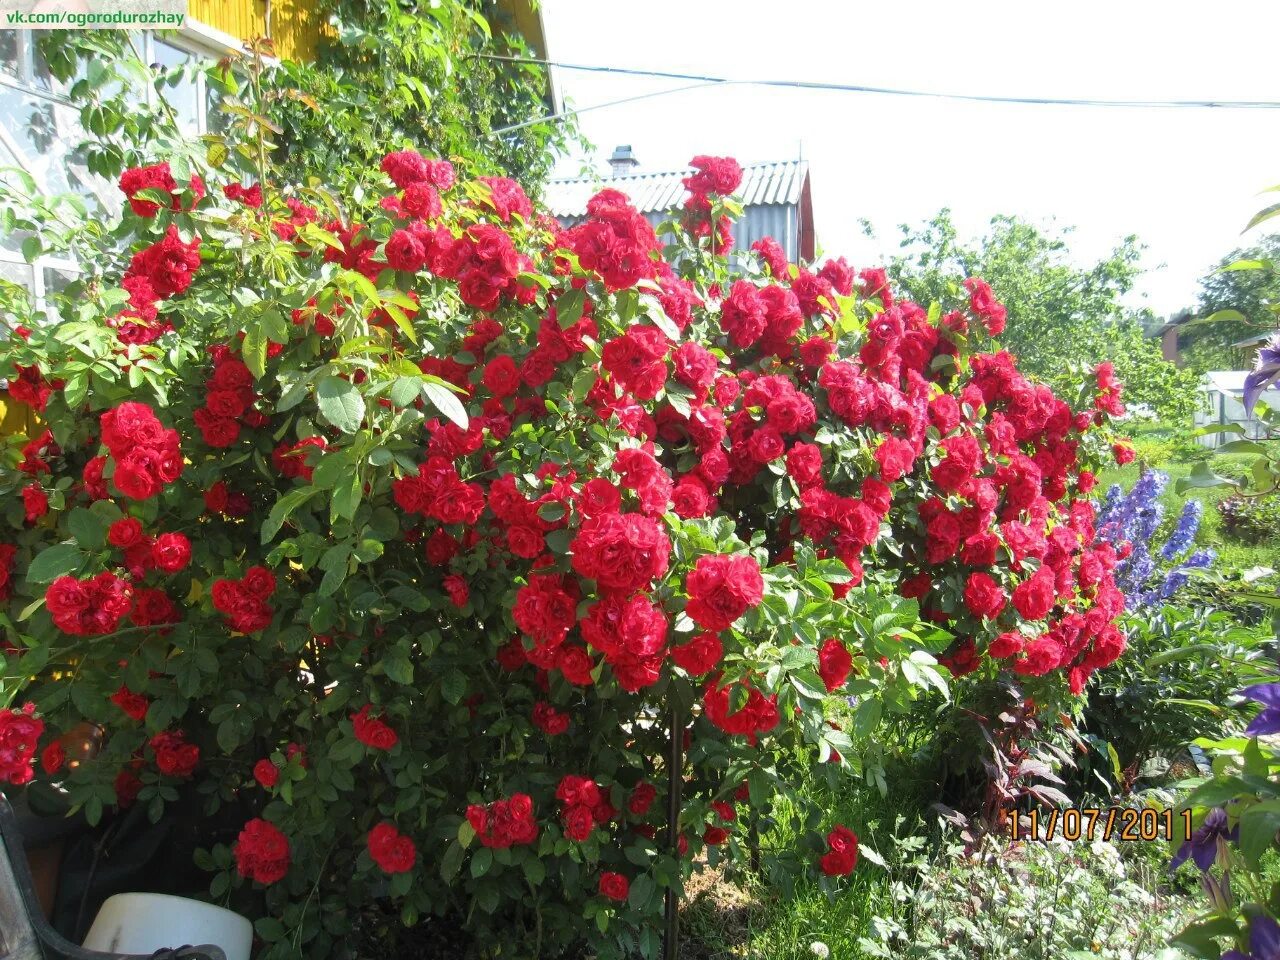 Саженцы liubimyi sad ru. Розы в огороде. Плетистые розы похожие на шиповник.